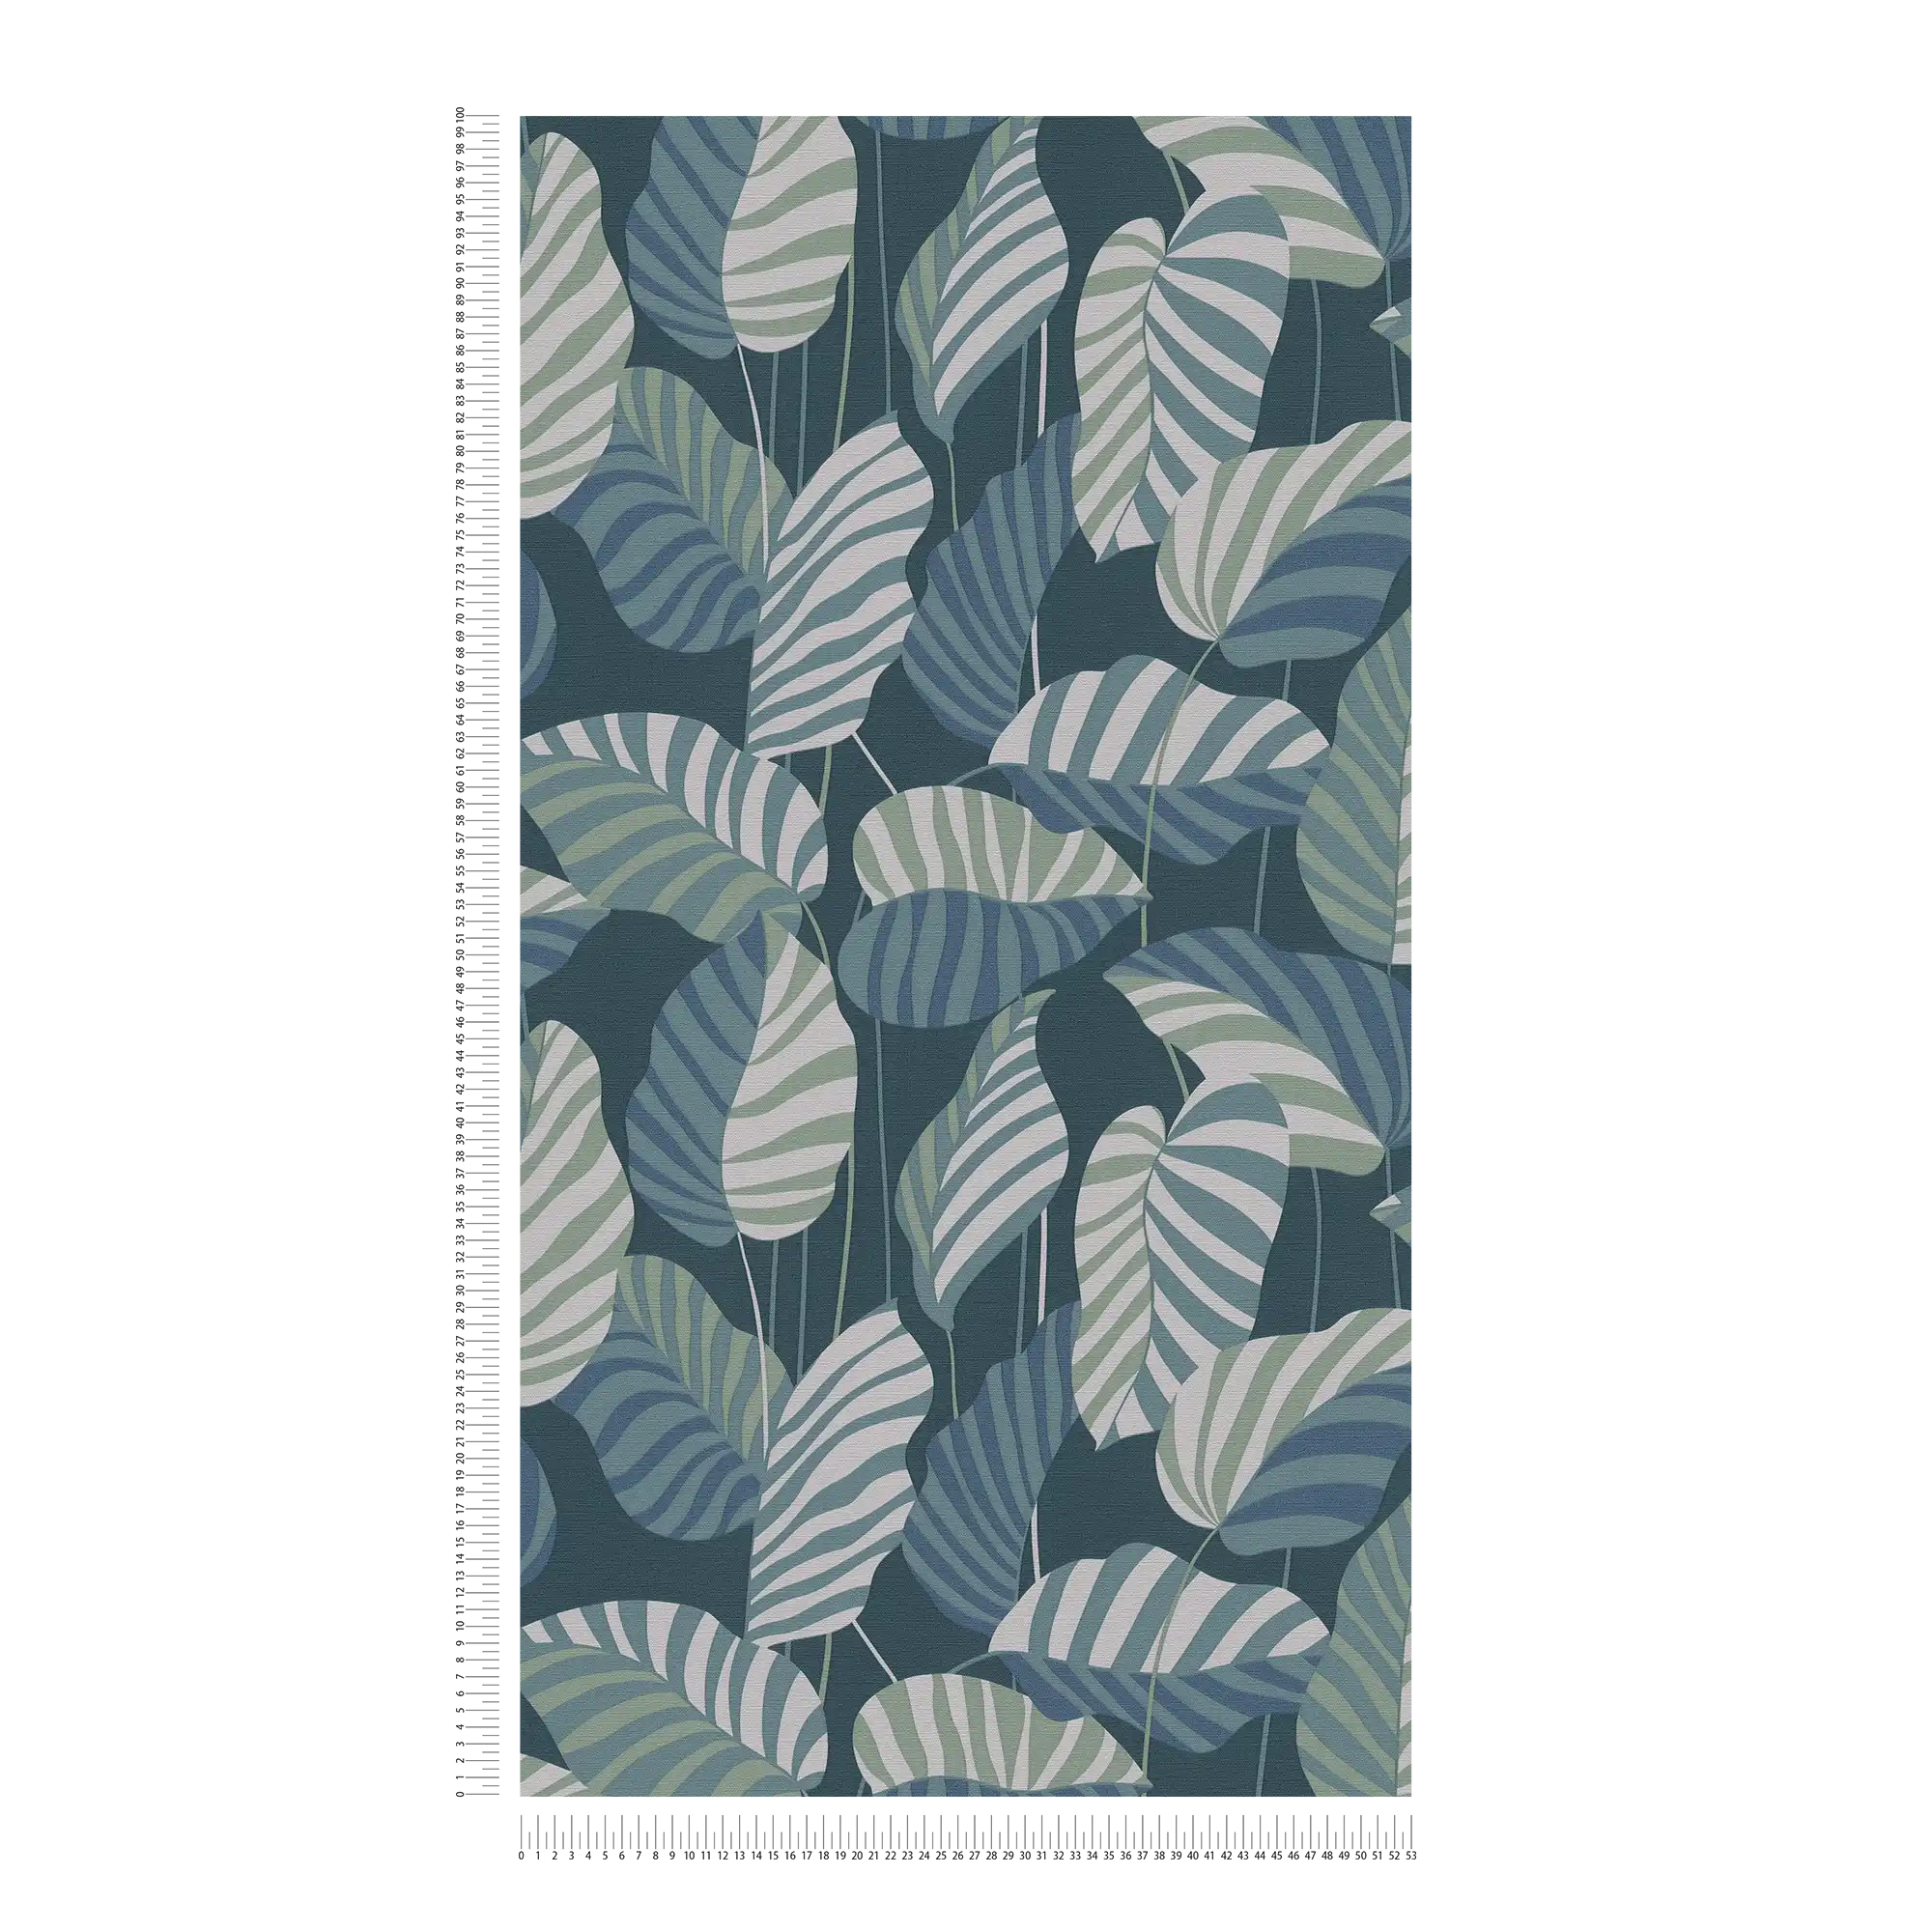             Carta da parati in tessuto non tessuto in stile giungla con foglie - blu, verde, bianco
        